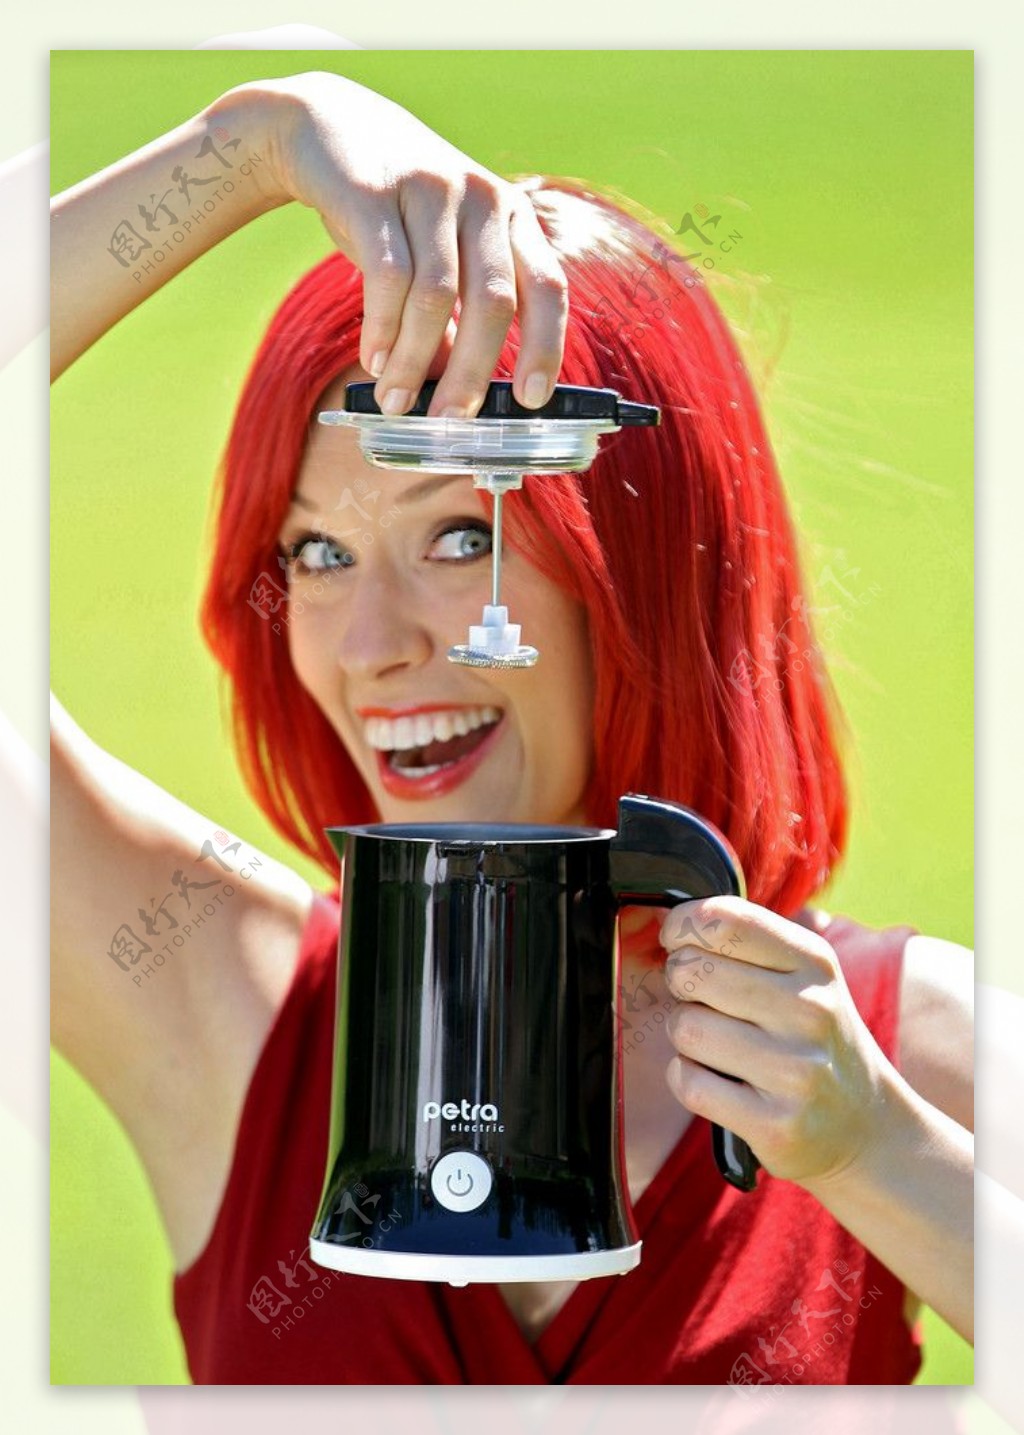 美女展示Petra牛奶搅拌机搅拌器图片